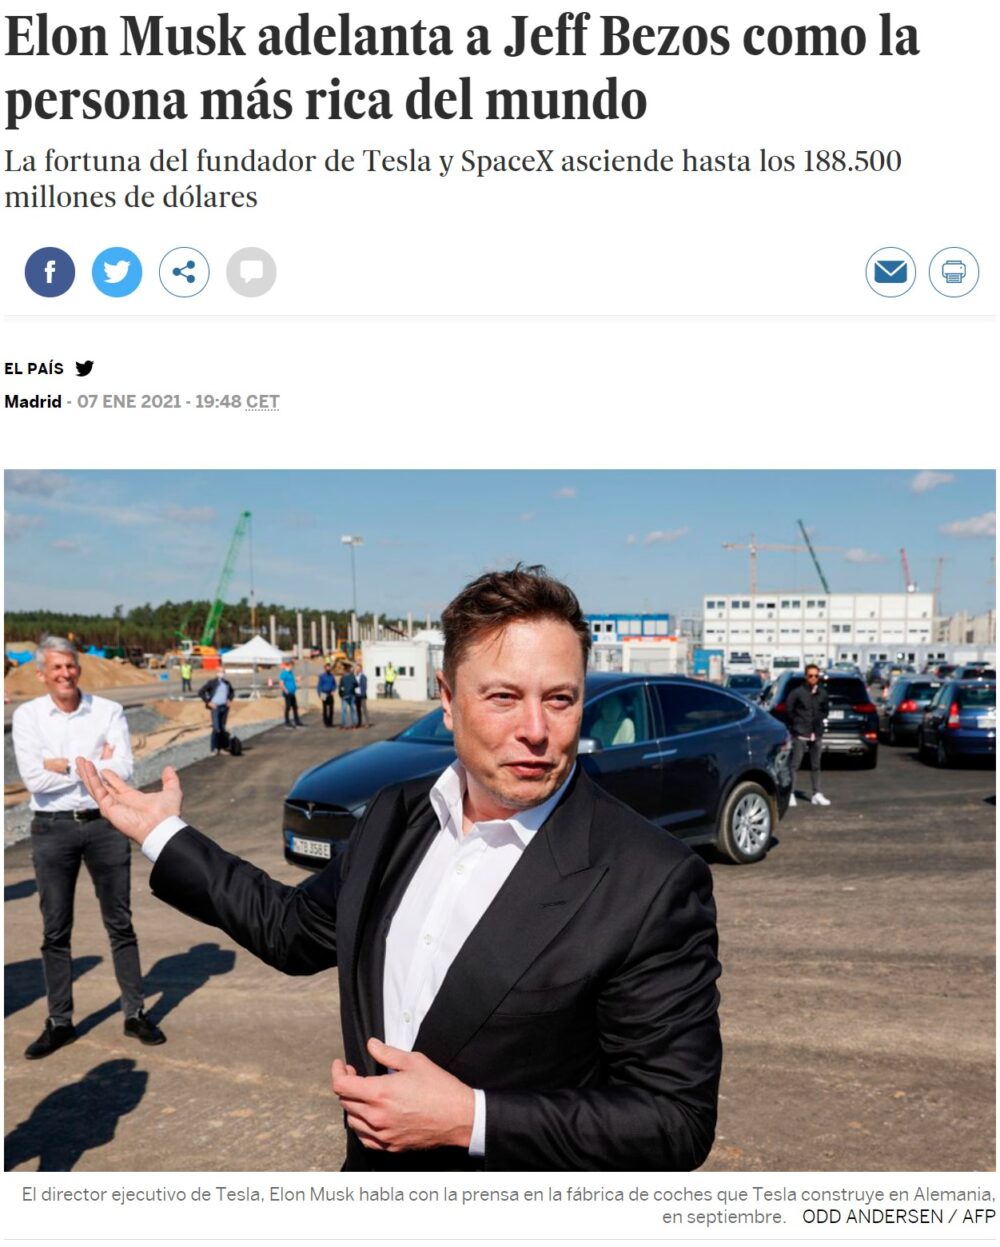 Buenos días a todos, sobre todo a Elon Musk